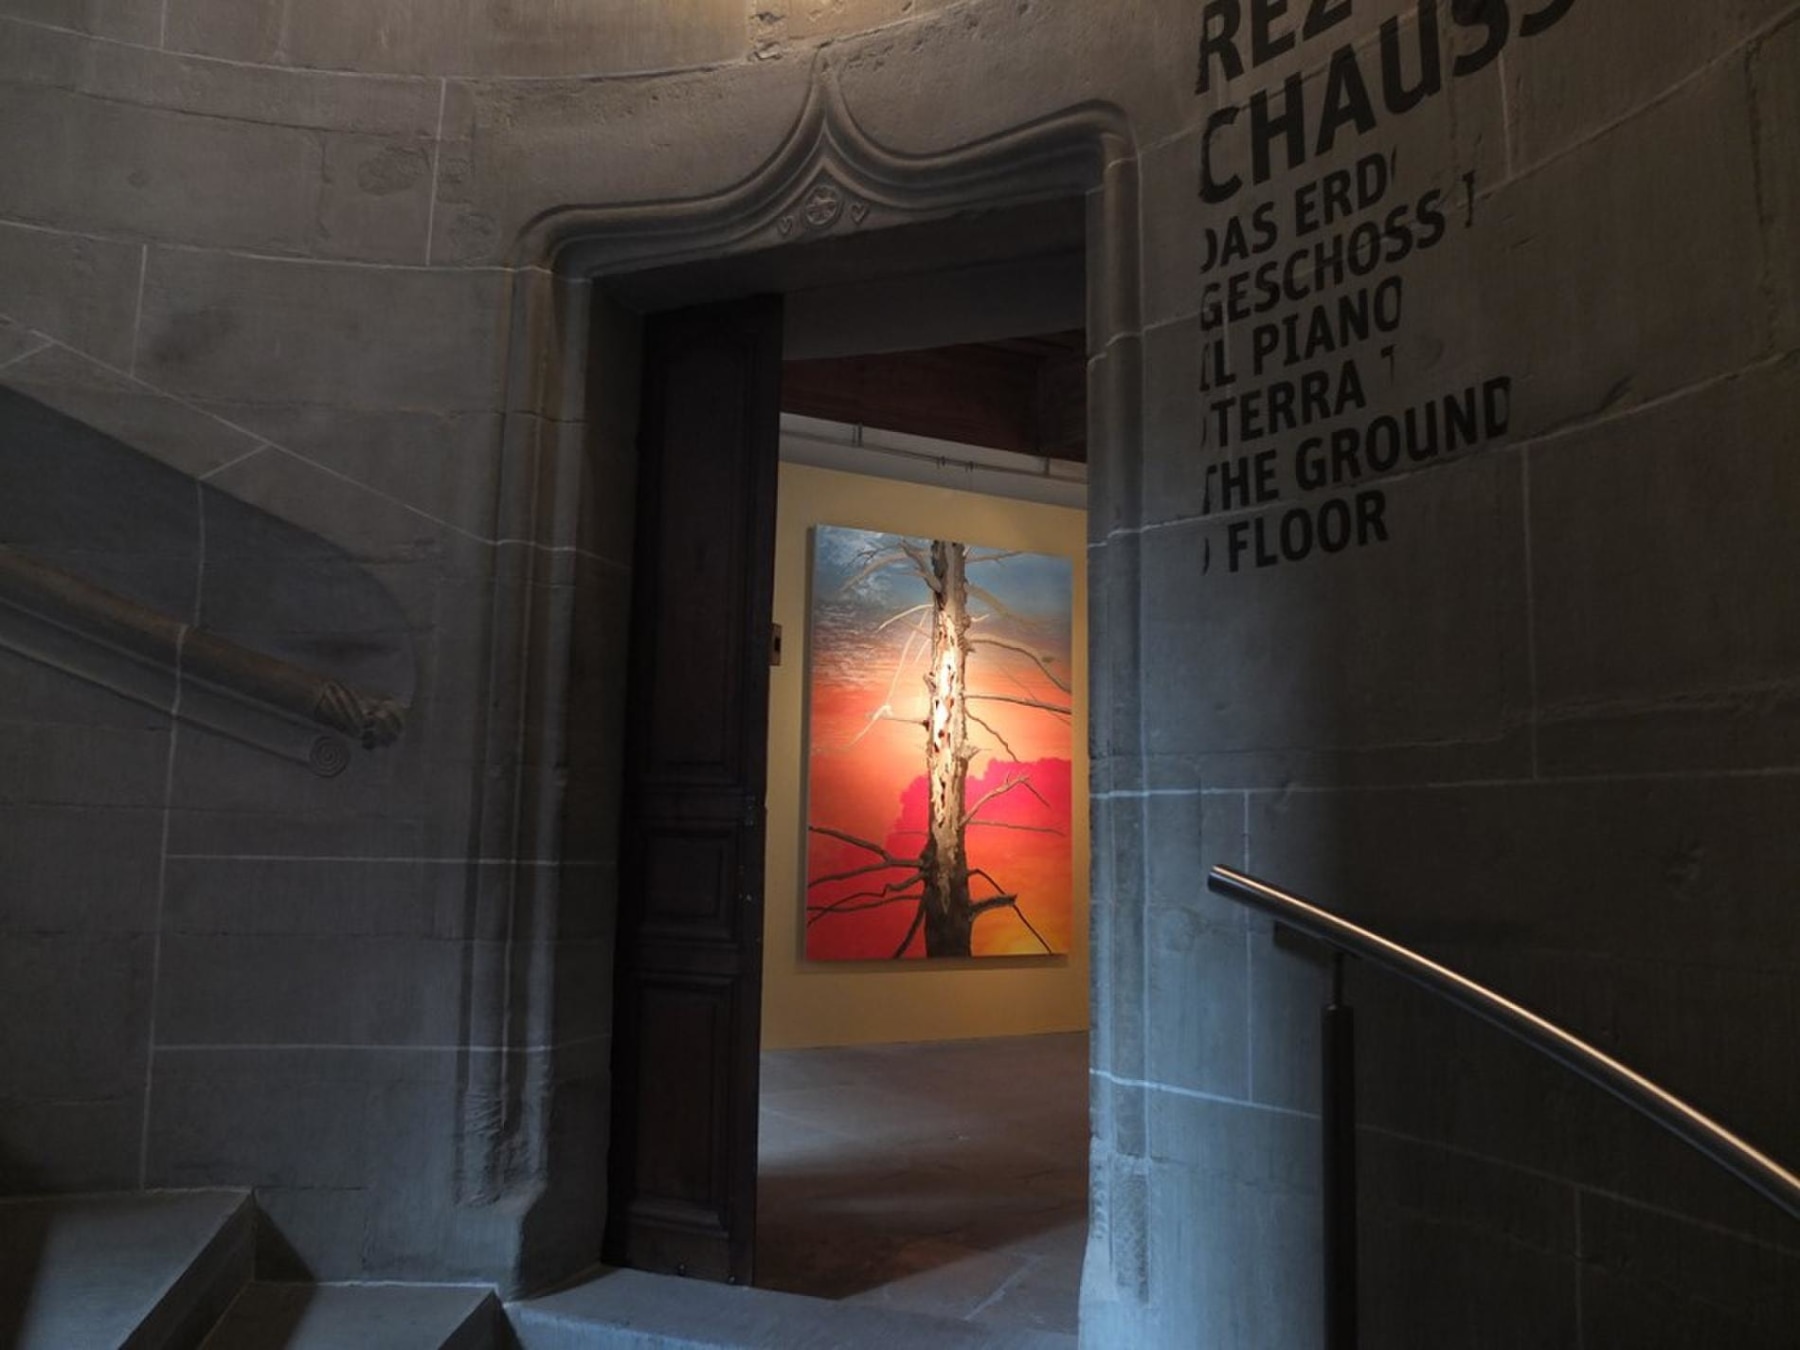 An open door revealing an artwork depicting a dead tree trunk